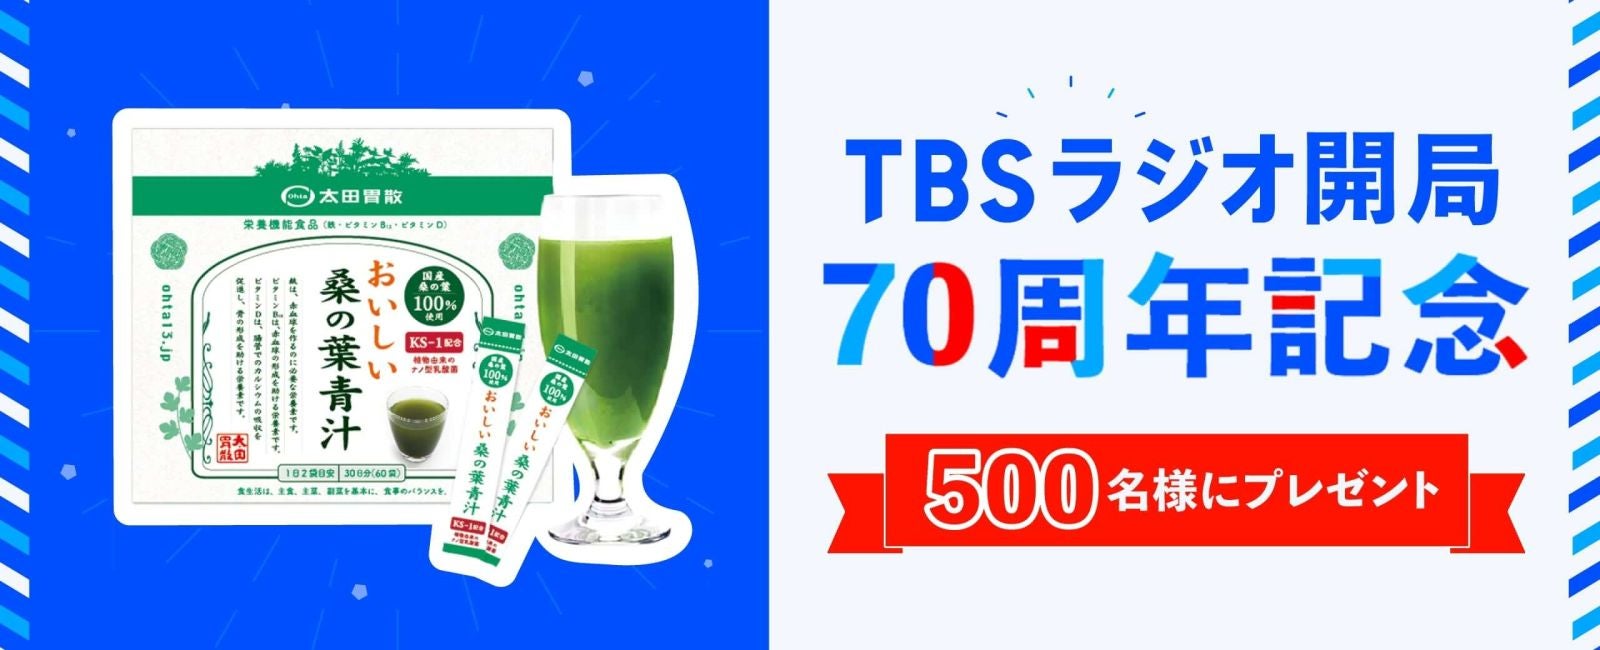 TBSラジオ開局70周年記念 おいしい桑の葉青汁 500名様にプレゼント